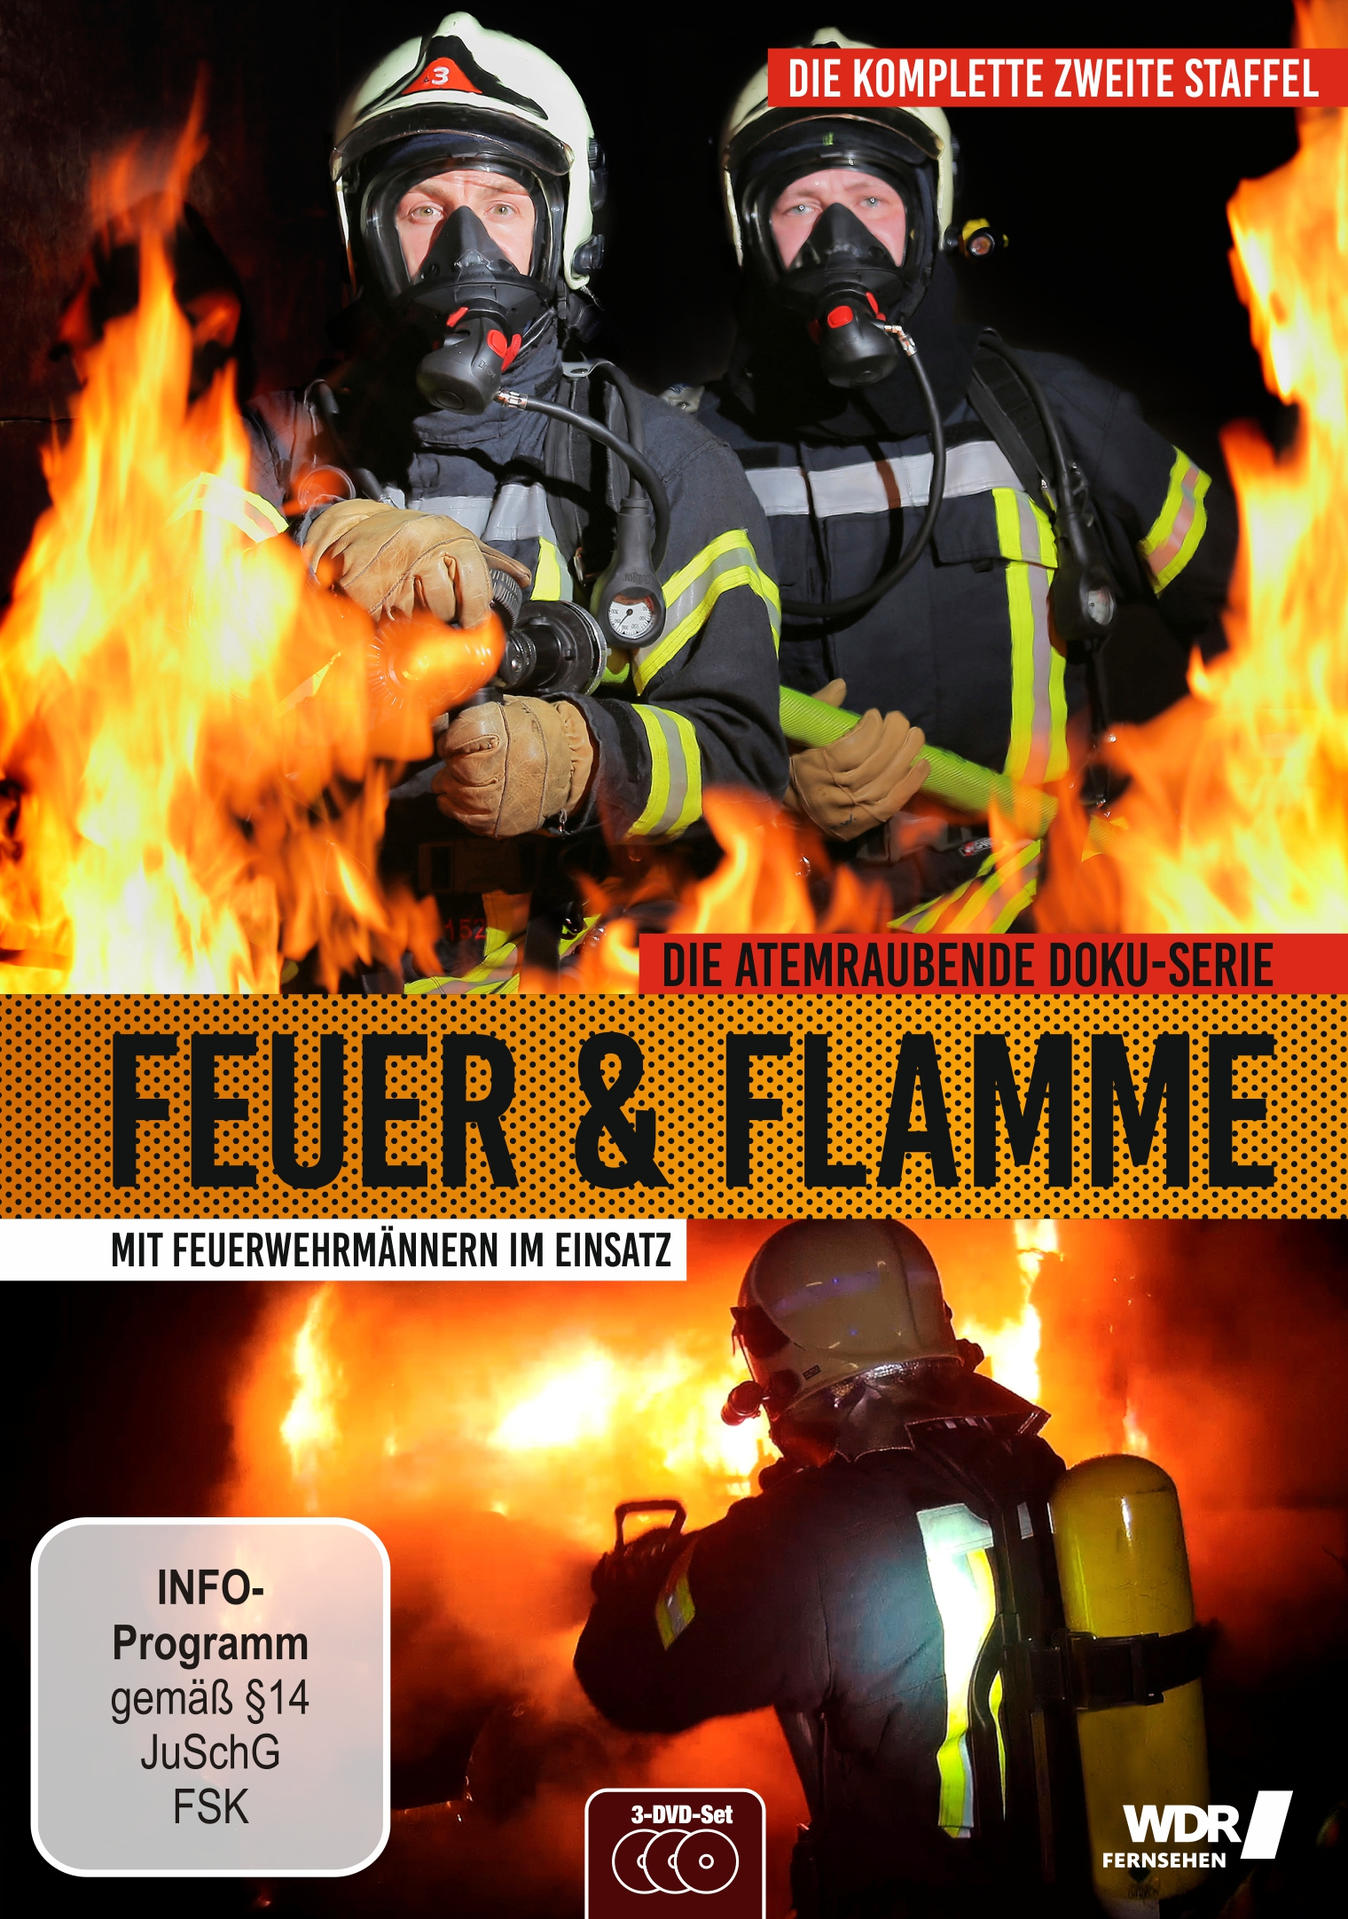 Mit und 2 Einsatz Feuerwehrmännern Flamme im - DVD Staffel - Feuer